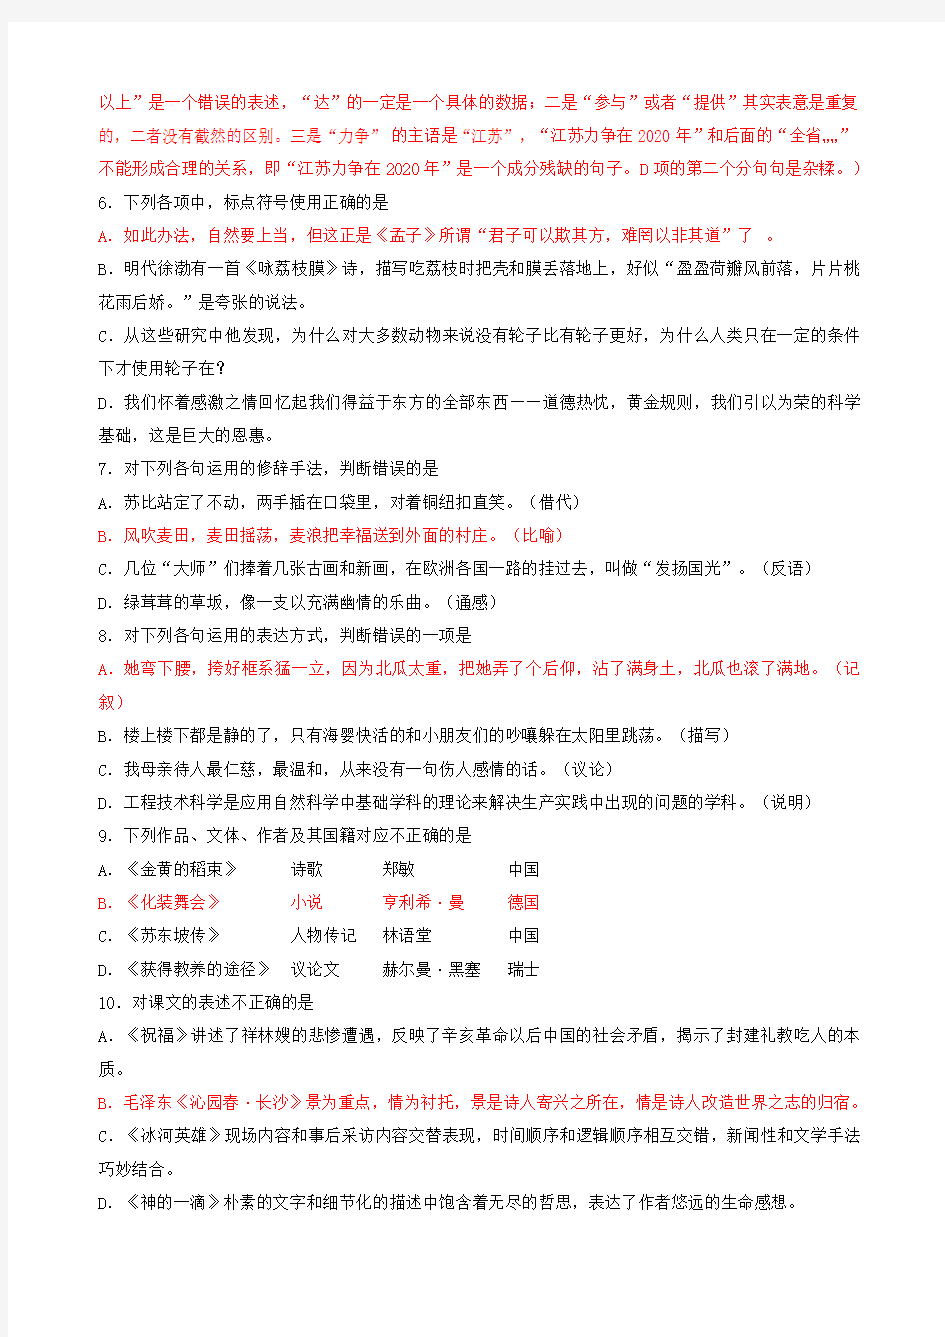 江苏省2015年普通高校对口单招文化统考语文试卷